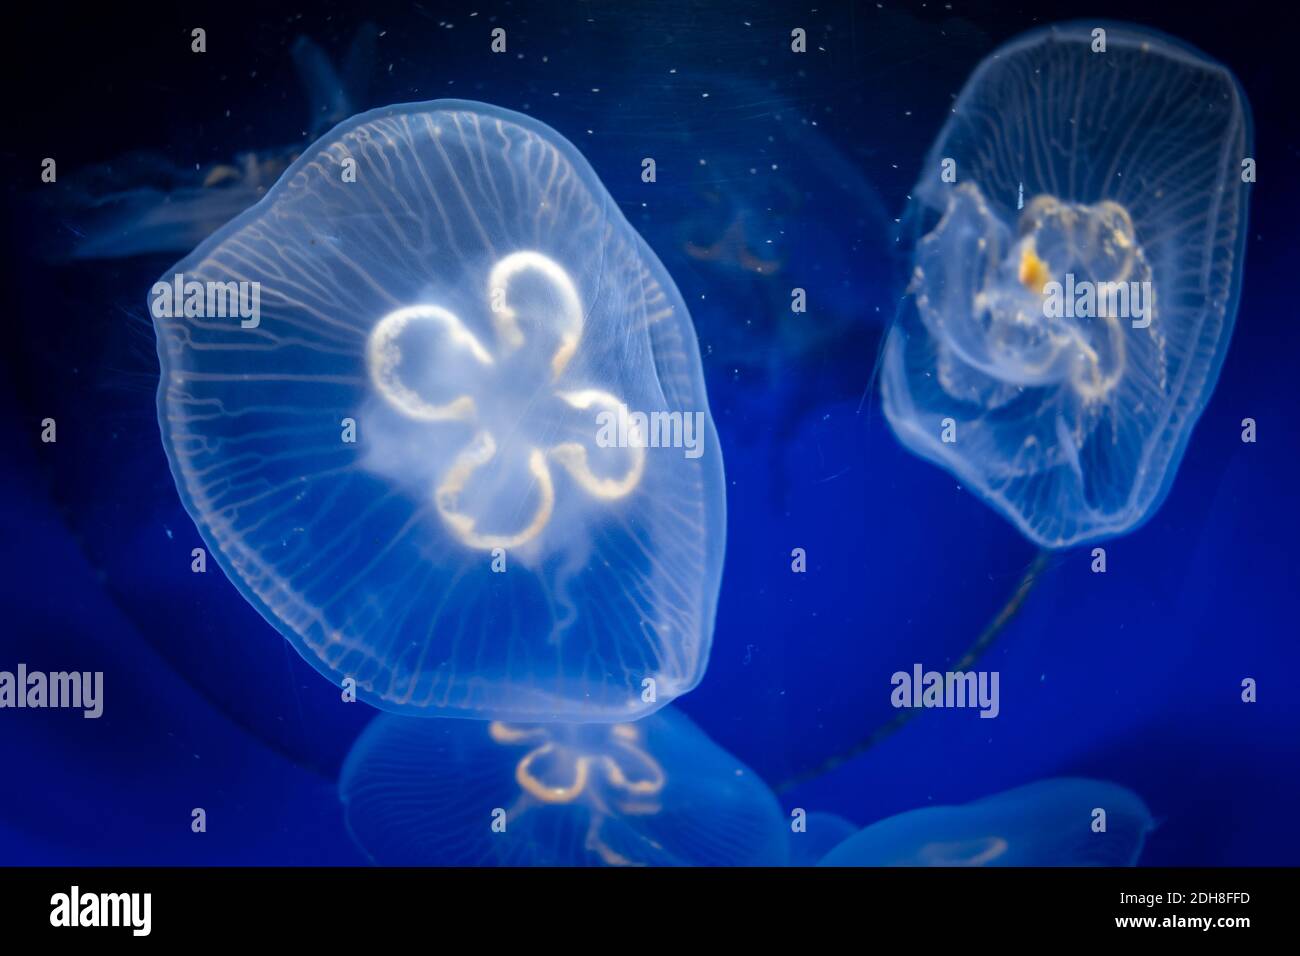 Common jellyfish underwater close-up view Stock Photo